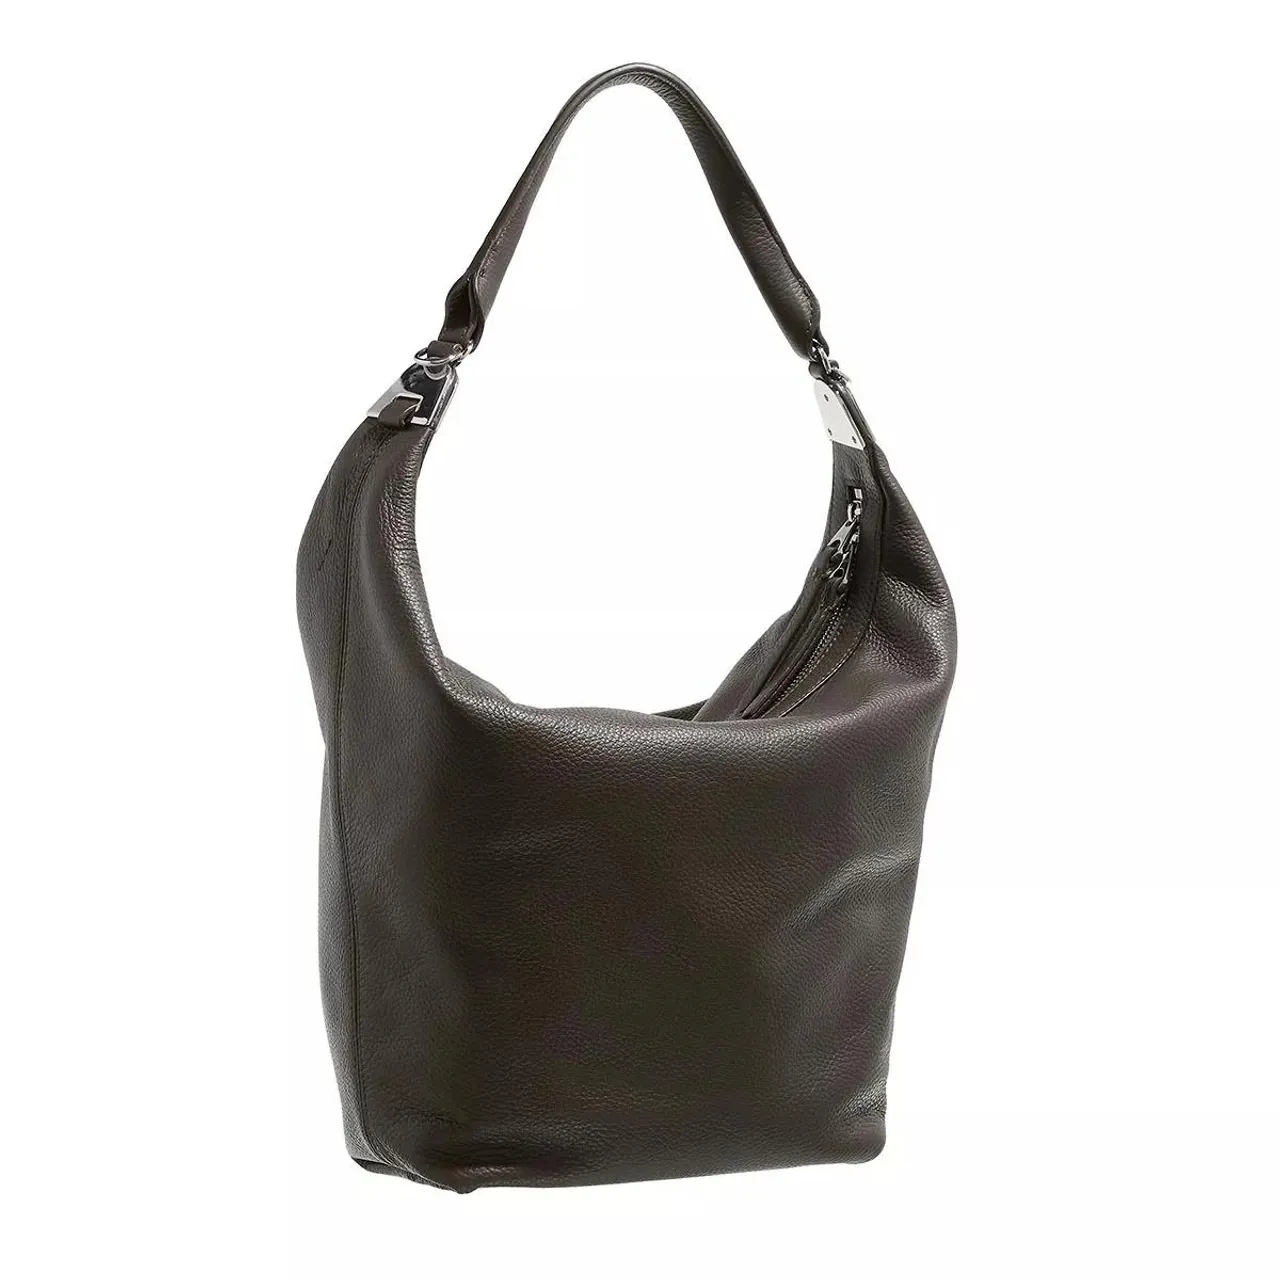 Handtaschen braun Hobo Bag One Size